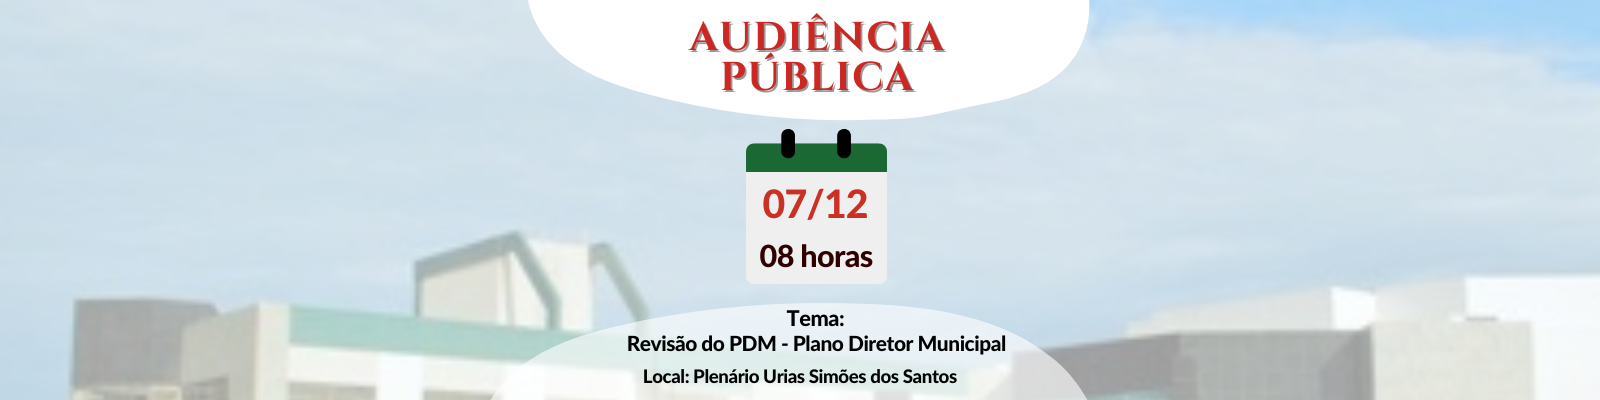 Câmara Municipal de Anchieta convida a população para Audiência Pública sobre a Revisão do Plano Diretor Municipal